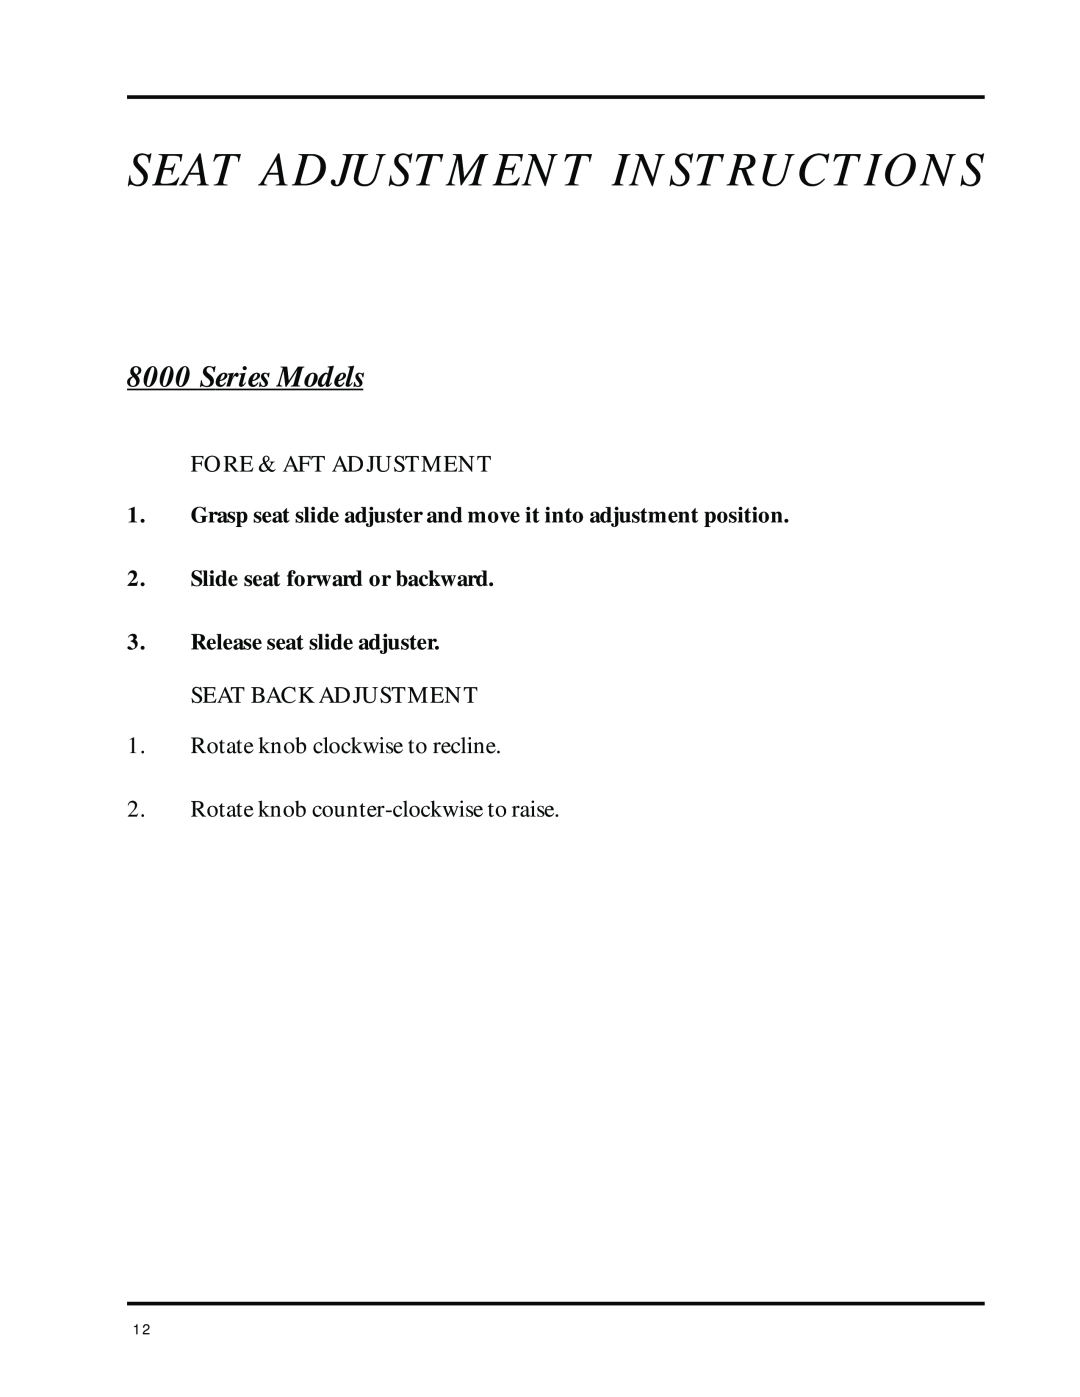 Dixon 8000 Series manual Series Models, Seat Adjustment Instructions 